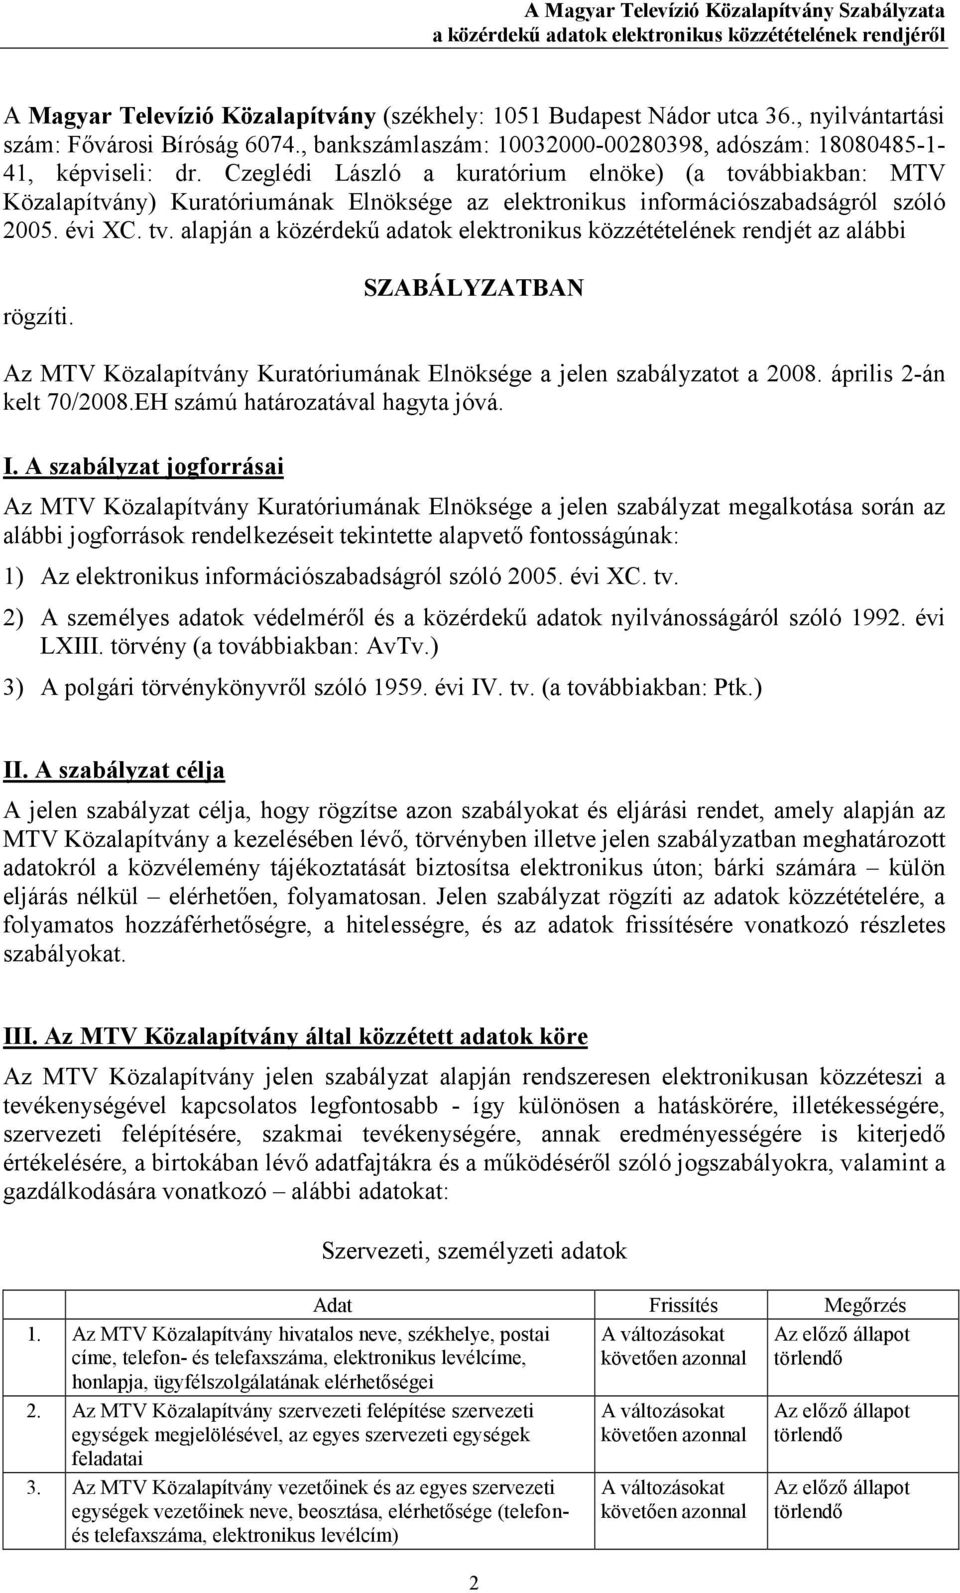 Czeglédi László a kuratórium elnöke) (a továbbiakban: MTV Közalapítvány) Kuratóriumának Elnöksége az elektronikus információszabadságról szóló 2005. évi XC. tv.